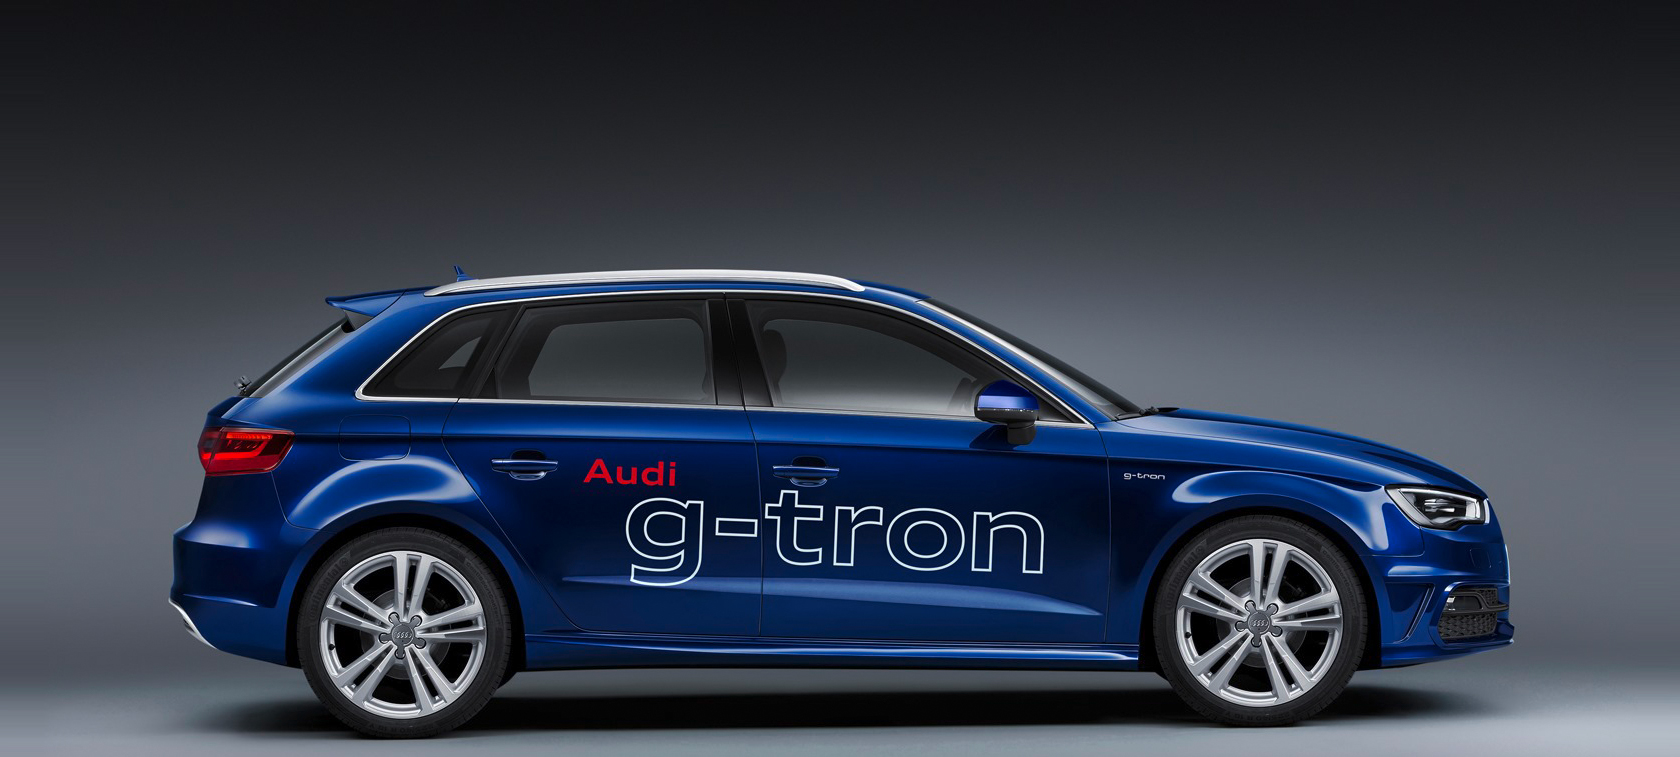 Audi A3 g-tron: "sztuczny" gaz już w sprzedaży